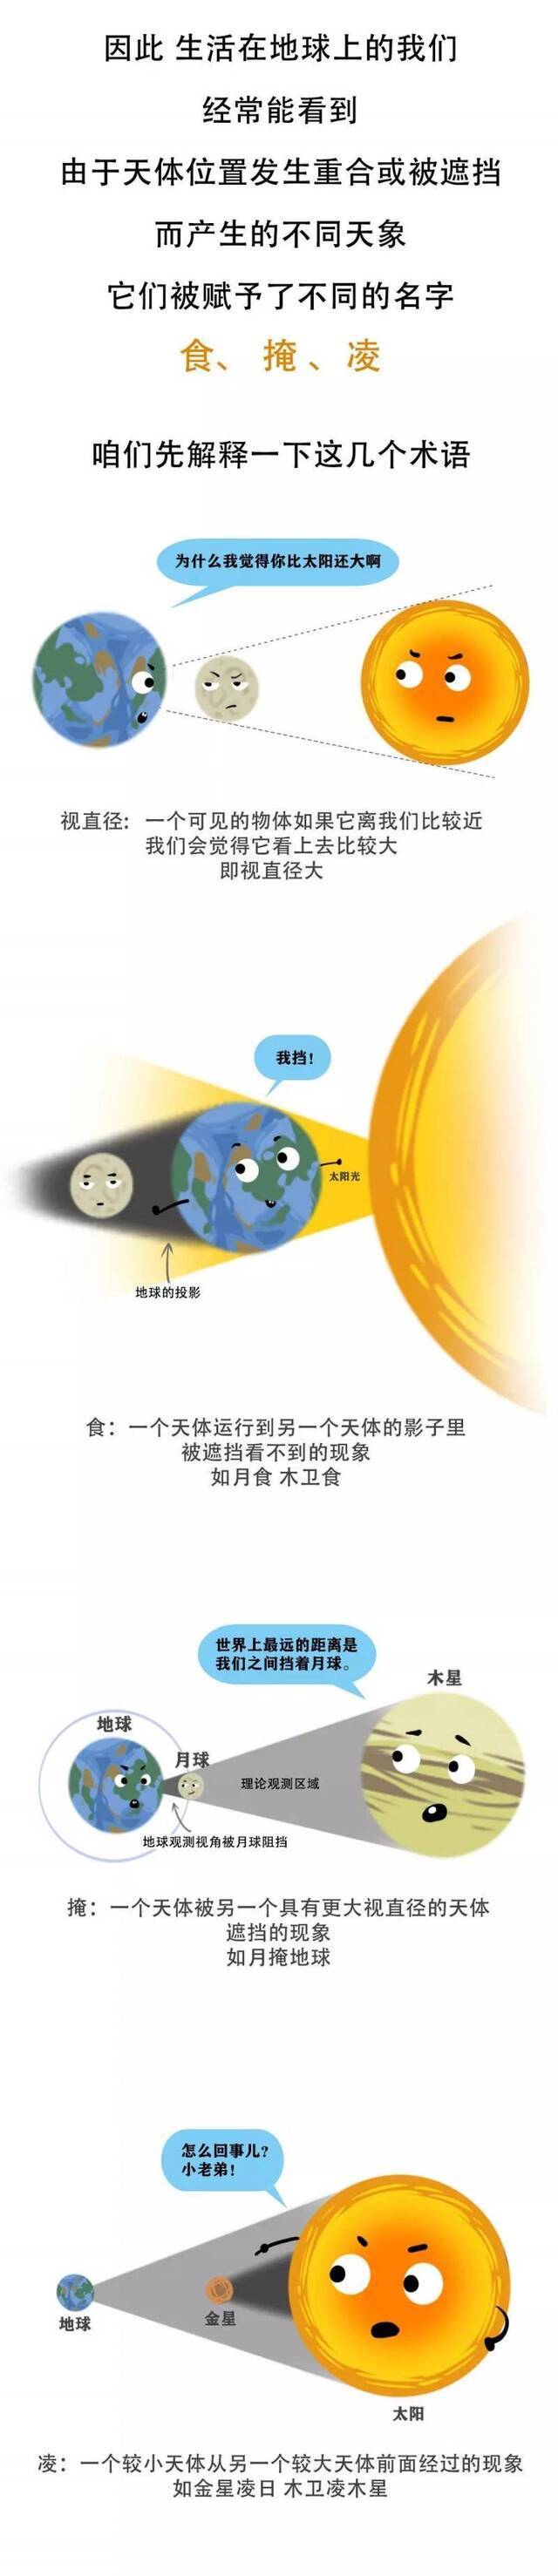 上海明天有日偏食 是否能观察到还要看云多不多